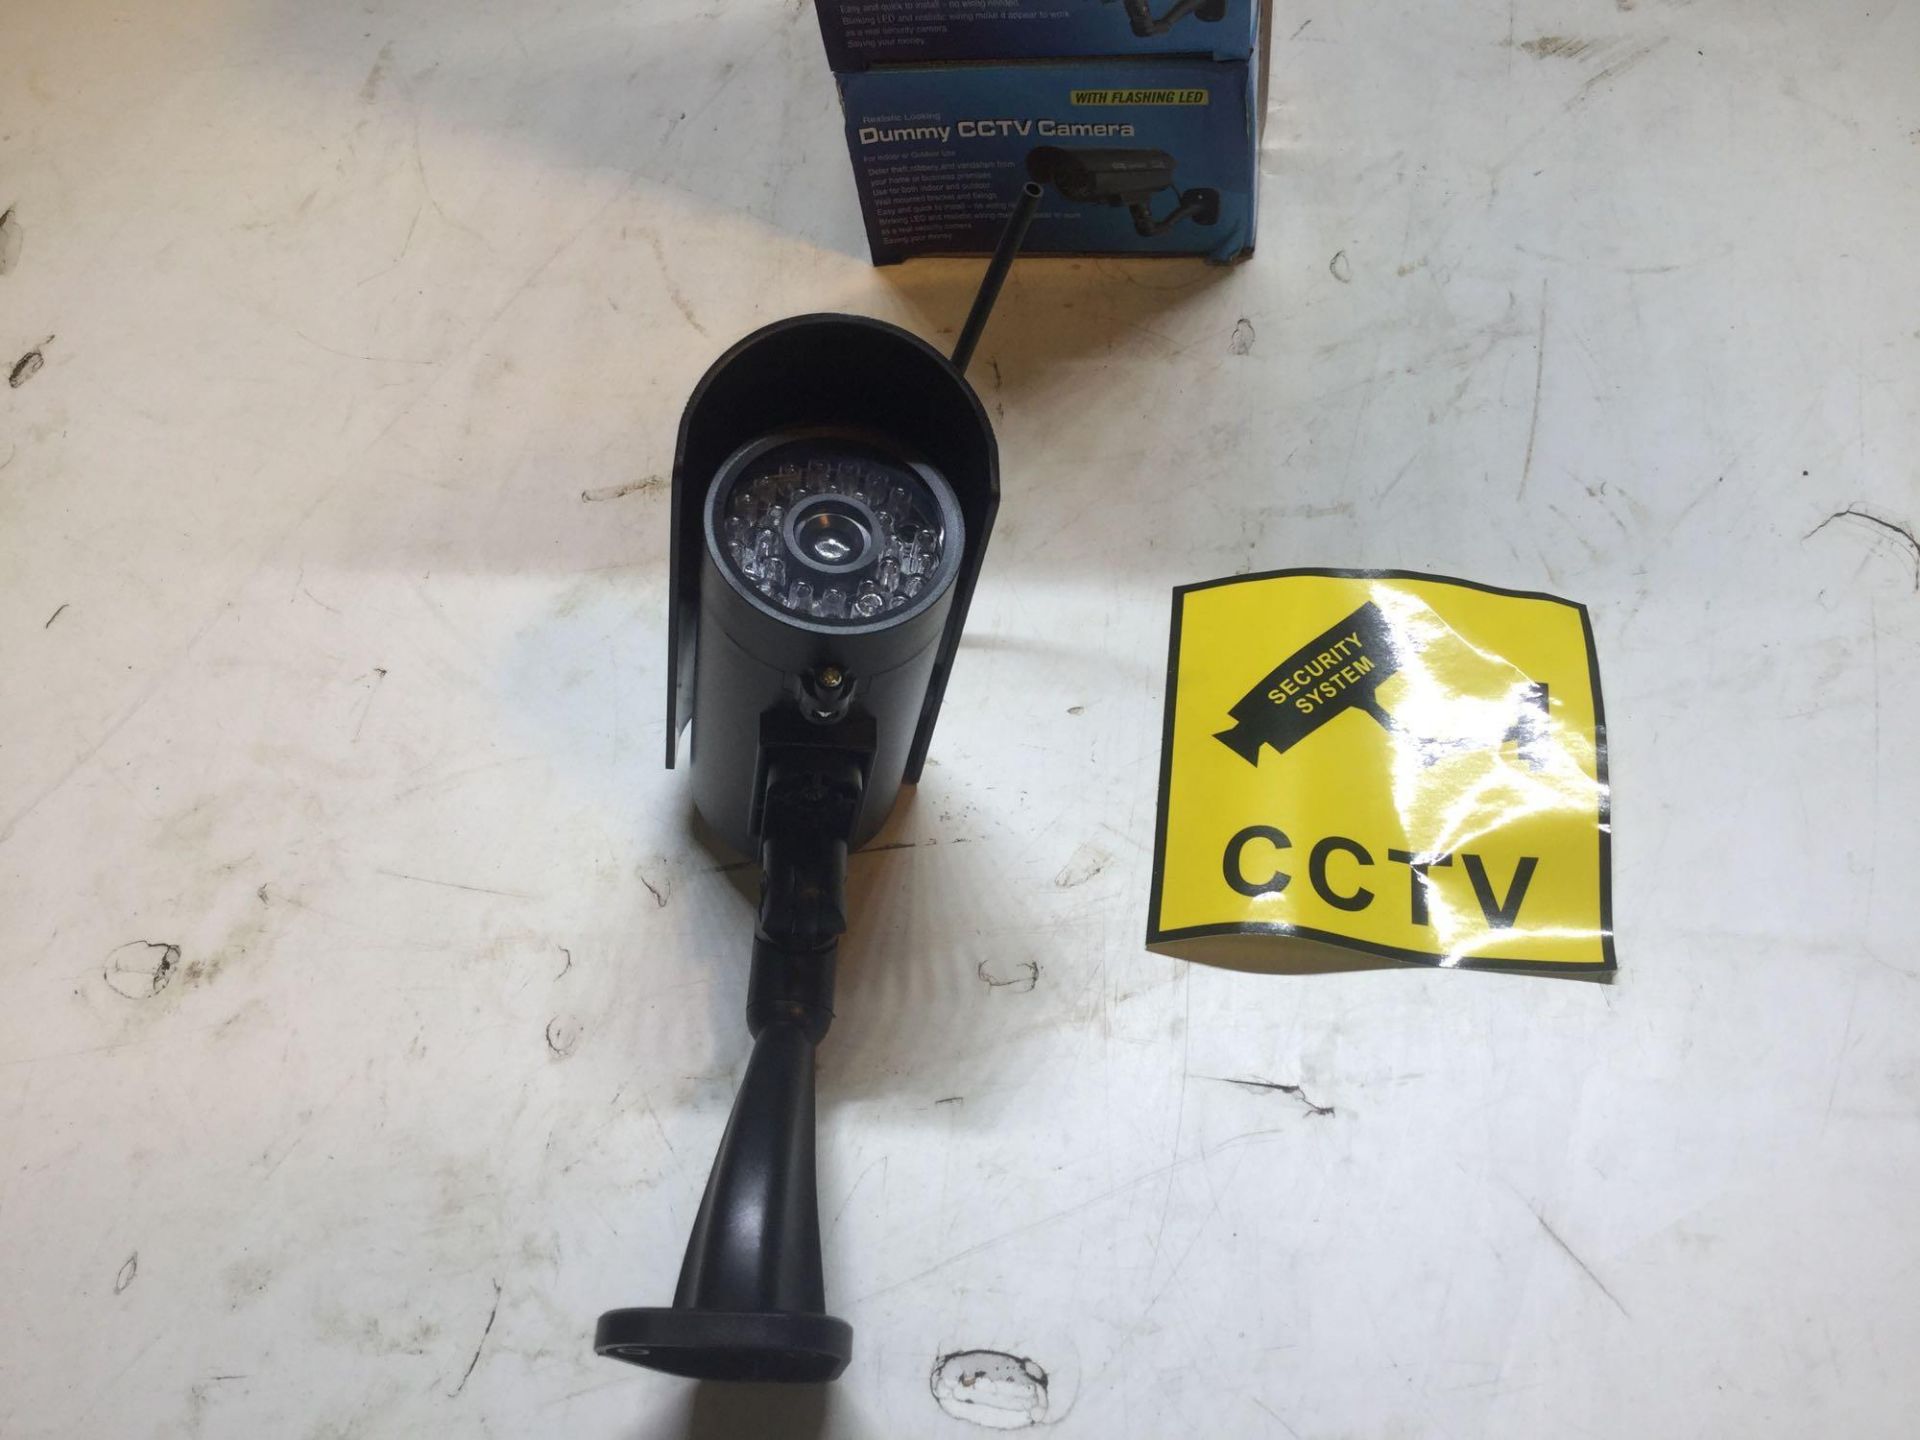 X5 Dummy CCTV Cameras With Flashing LED - Image 3 of 4